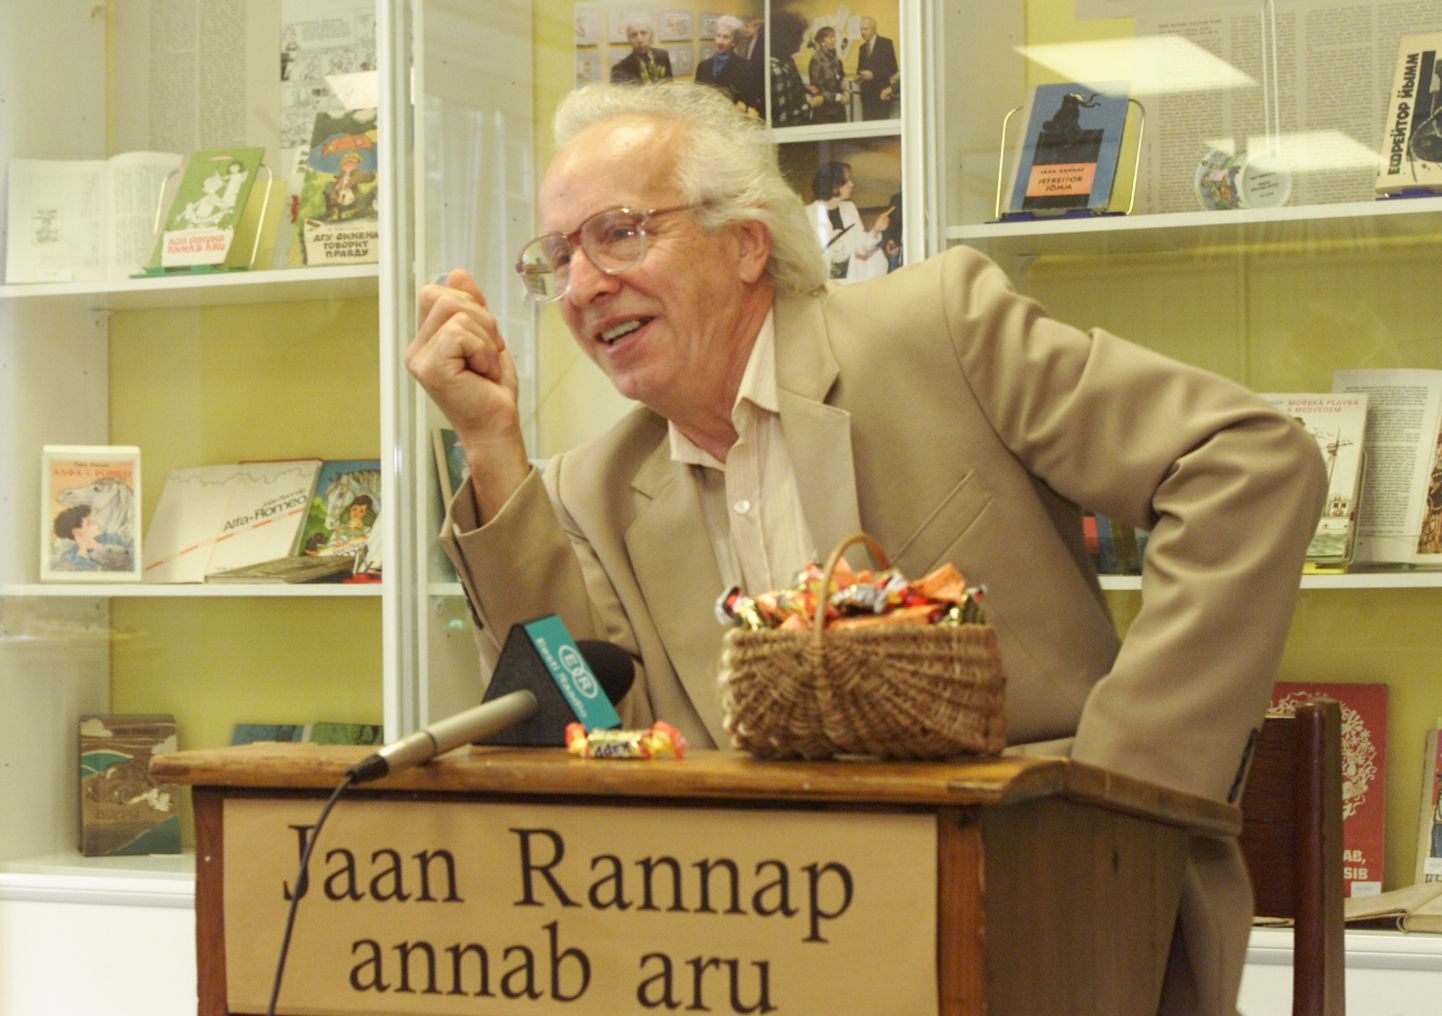 Lastekirjanik Jaan Rannap oma 70. sünnipäeval.